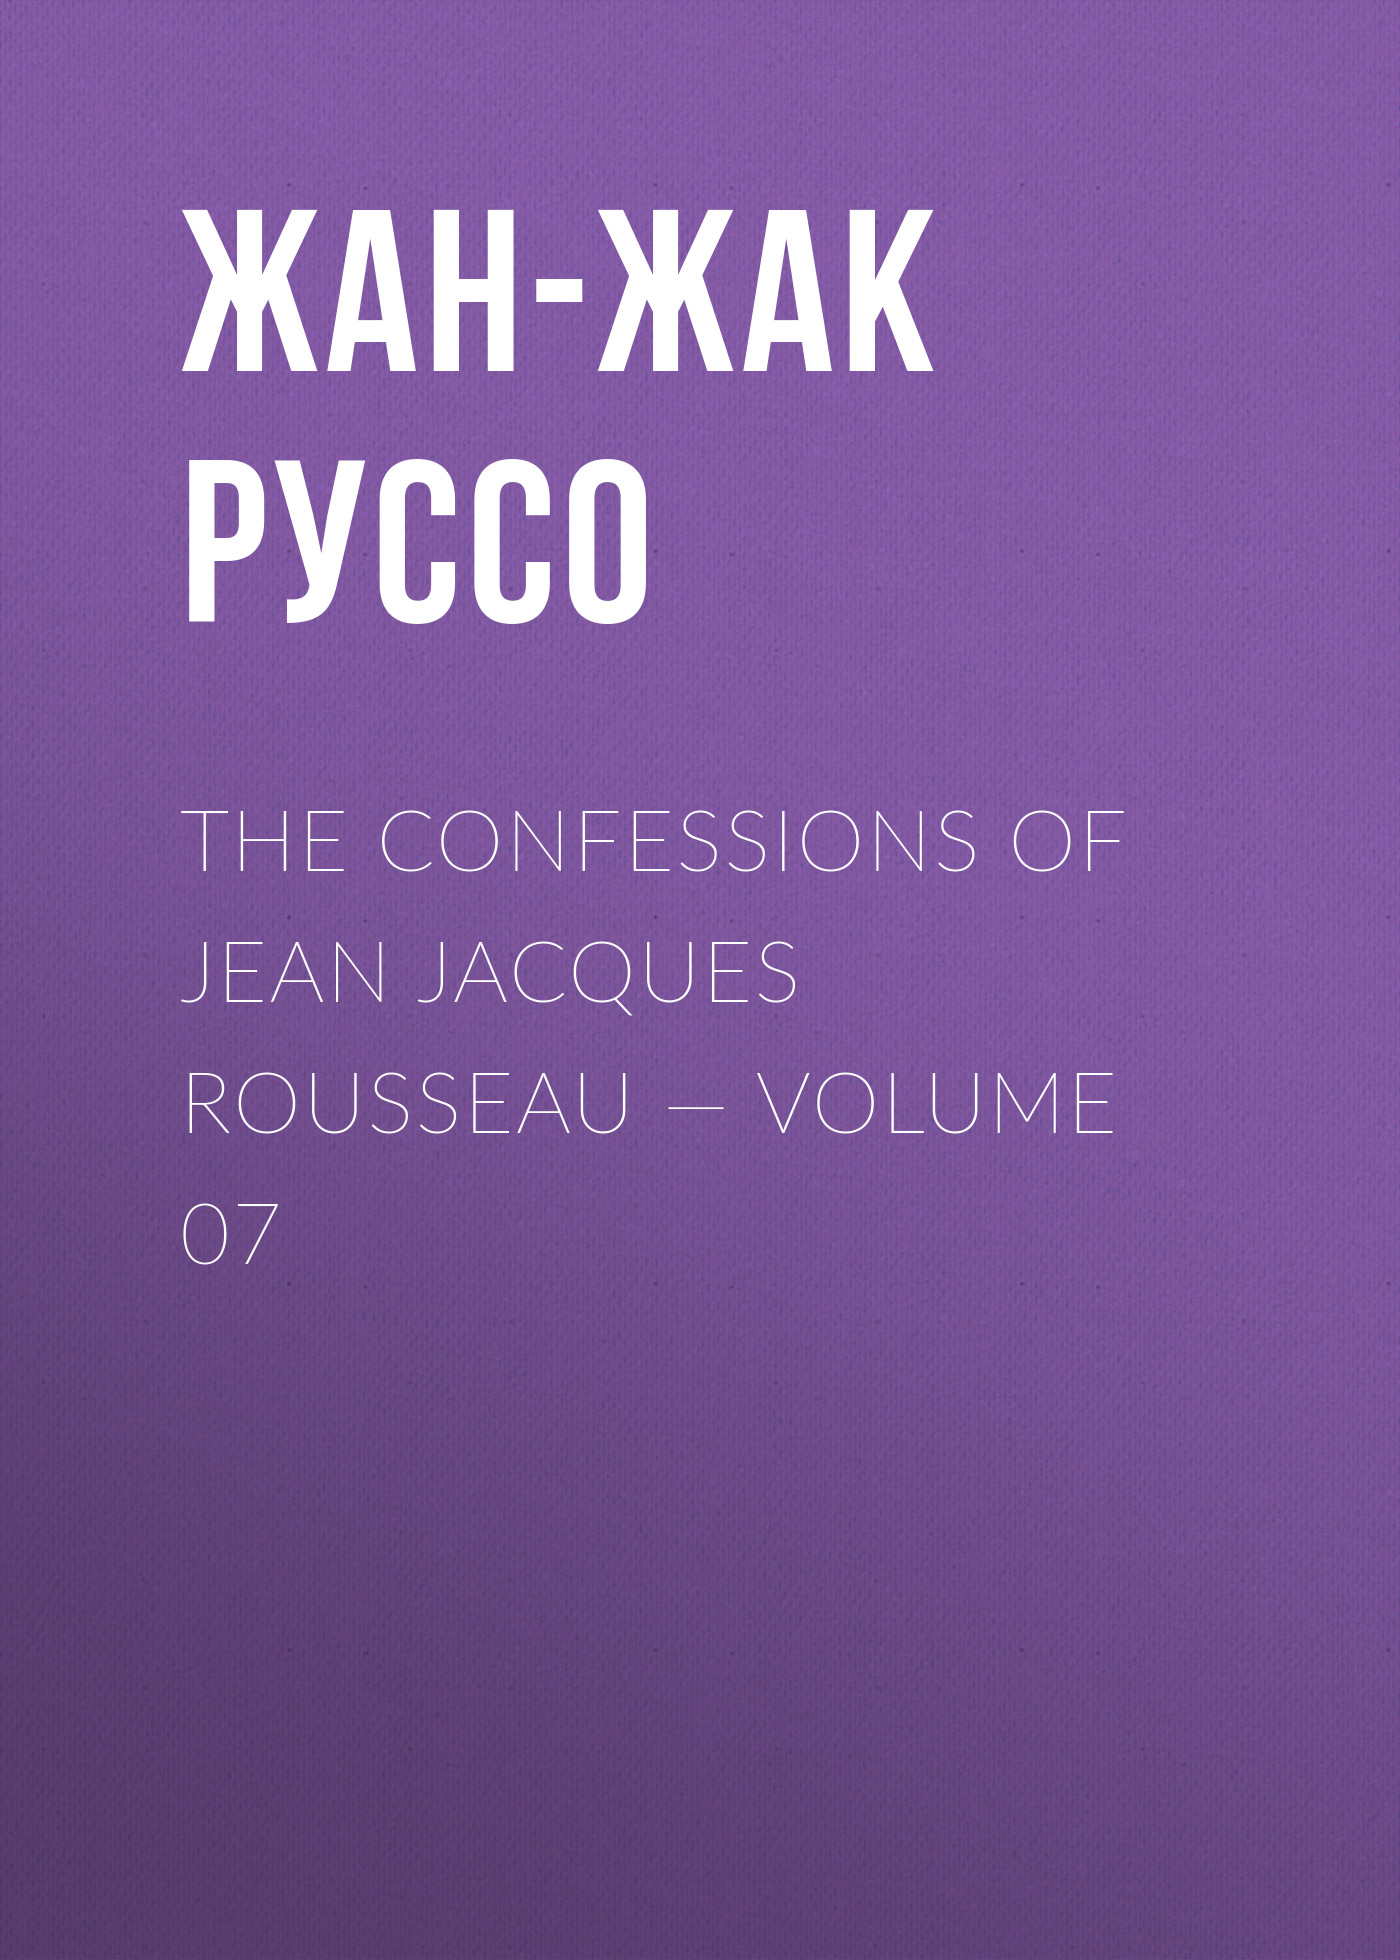 Книга The Confessions of Jean Jacques Rousseau – Volume 07 из серии , созданная Жан-Жак Руссо, может относится к жанру Биографии и Мемуары, Литература 18 века, Зарубежная старинная литература. Стоимость электронной книги The Confessions of Jean Jacques Rousseau – Volume 07 с идентификатором 34840278 составляет 0 руб.